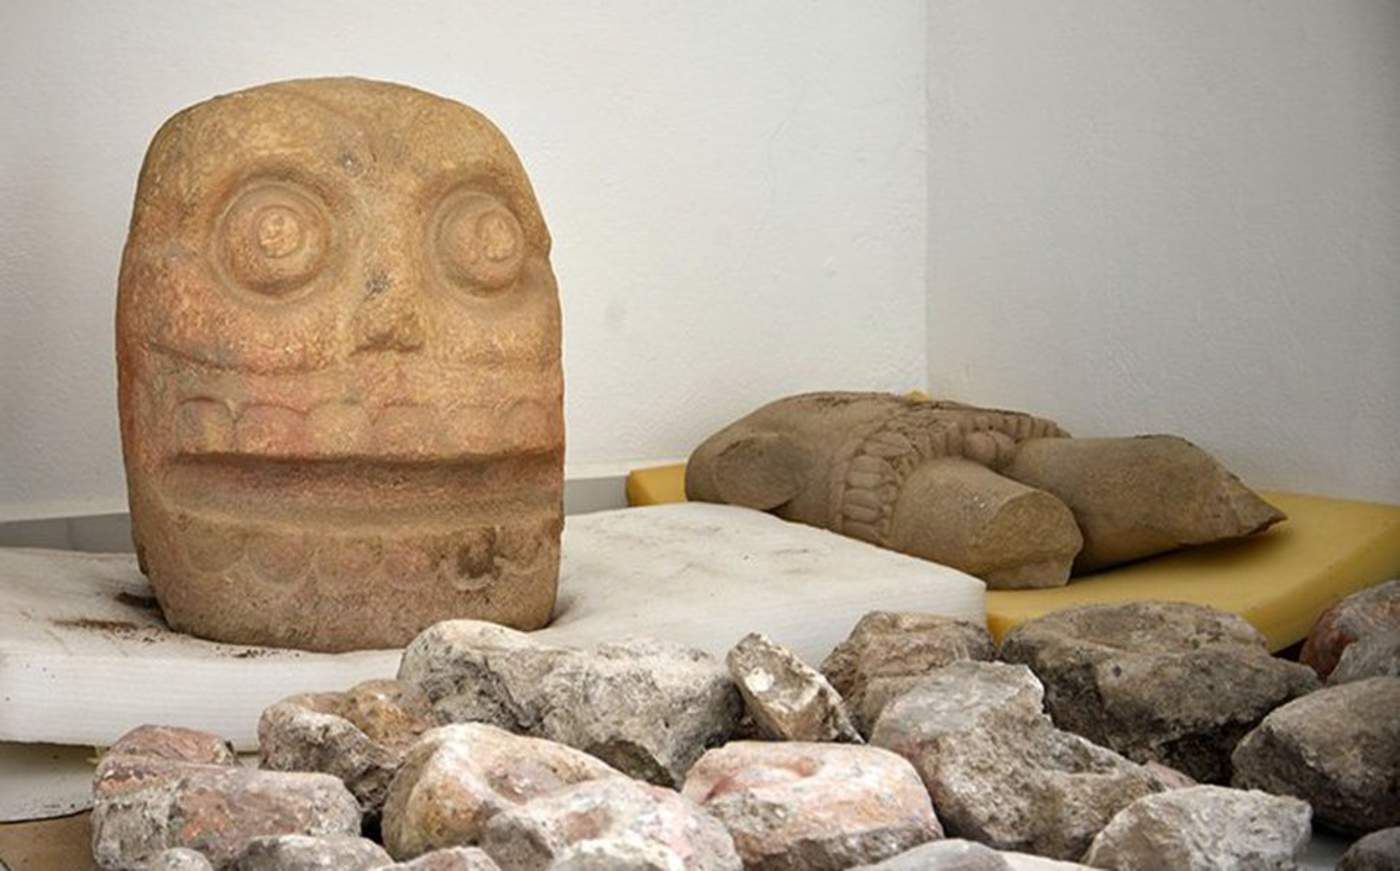 El hallazgo fue efectuado durante excavaciones recientes en unas ruinas del grupo étnico popoloca, en el estado céntrico de Puebla, informó el Instituto Nacional de Antropología e Historia. (ARCHIVO)